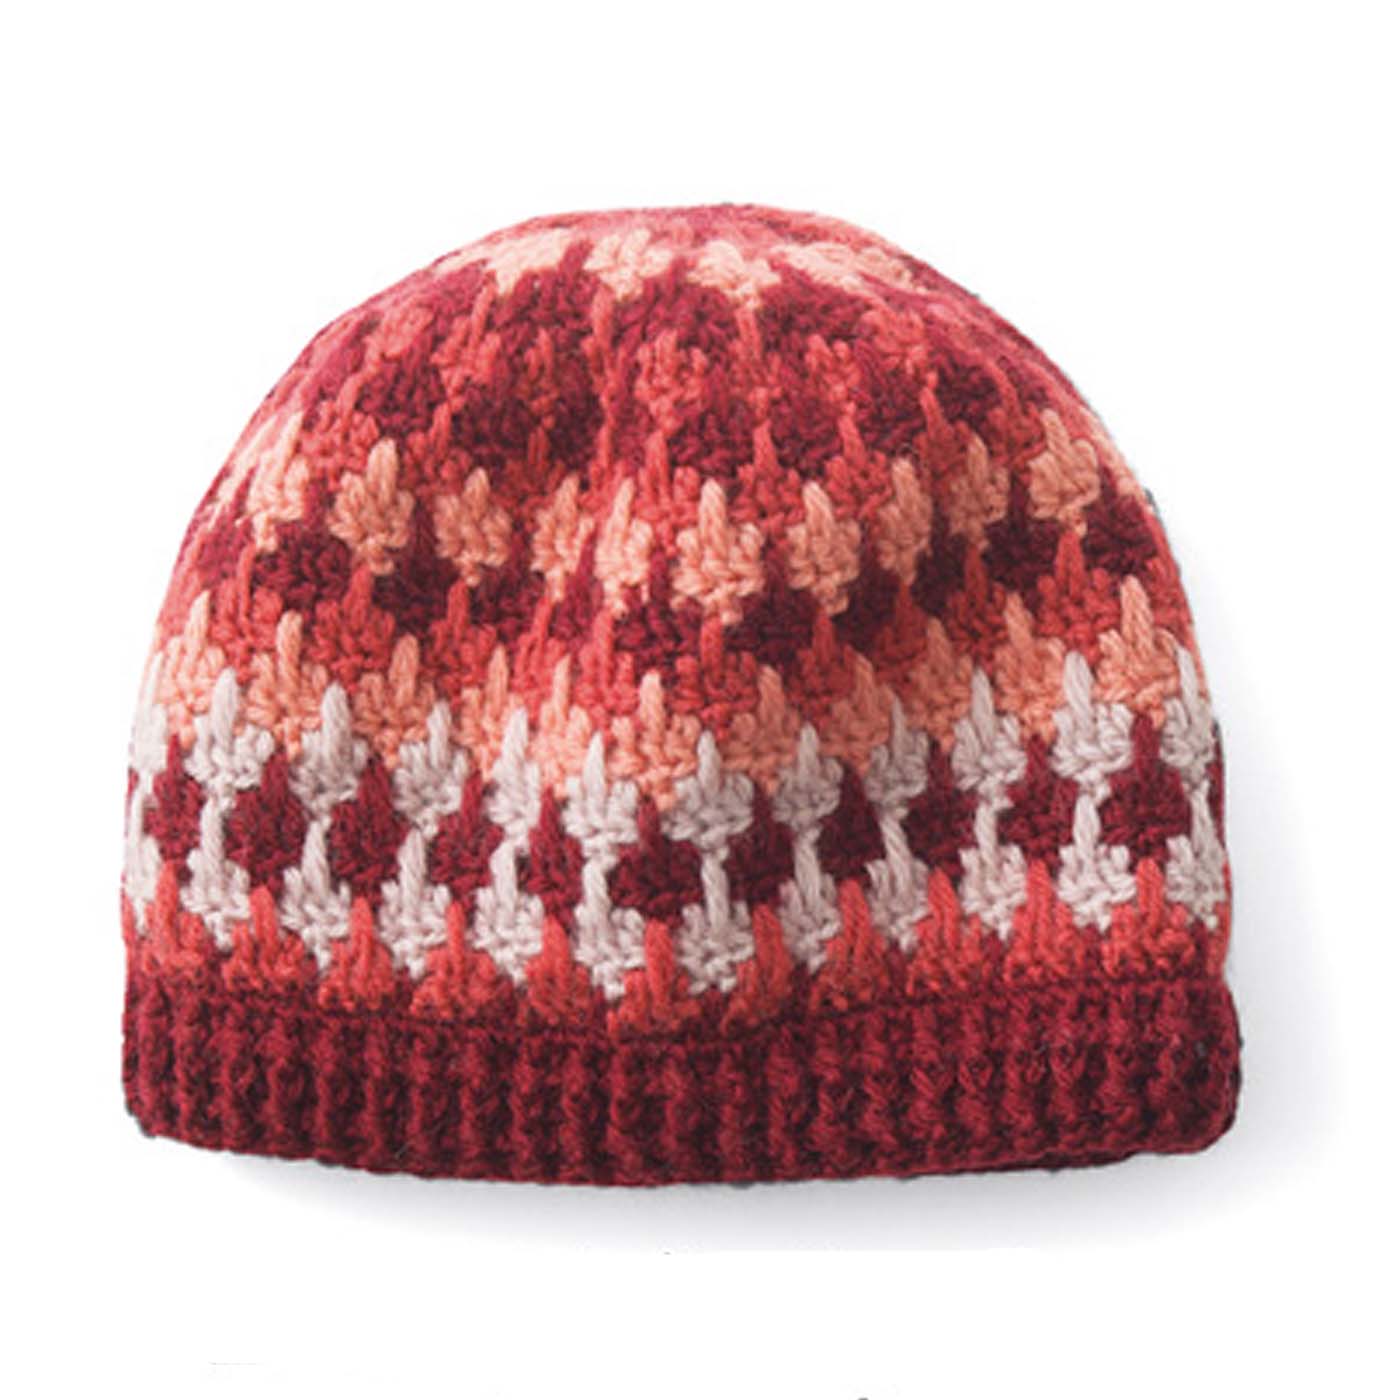 模様編みパターンを楽しむ レトロ風かぎ針編みニット帽子 その他編み物 編み物 手芸 手づくりキット レディースファッション 雑貨のアウトレット通販 Real Stock